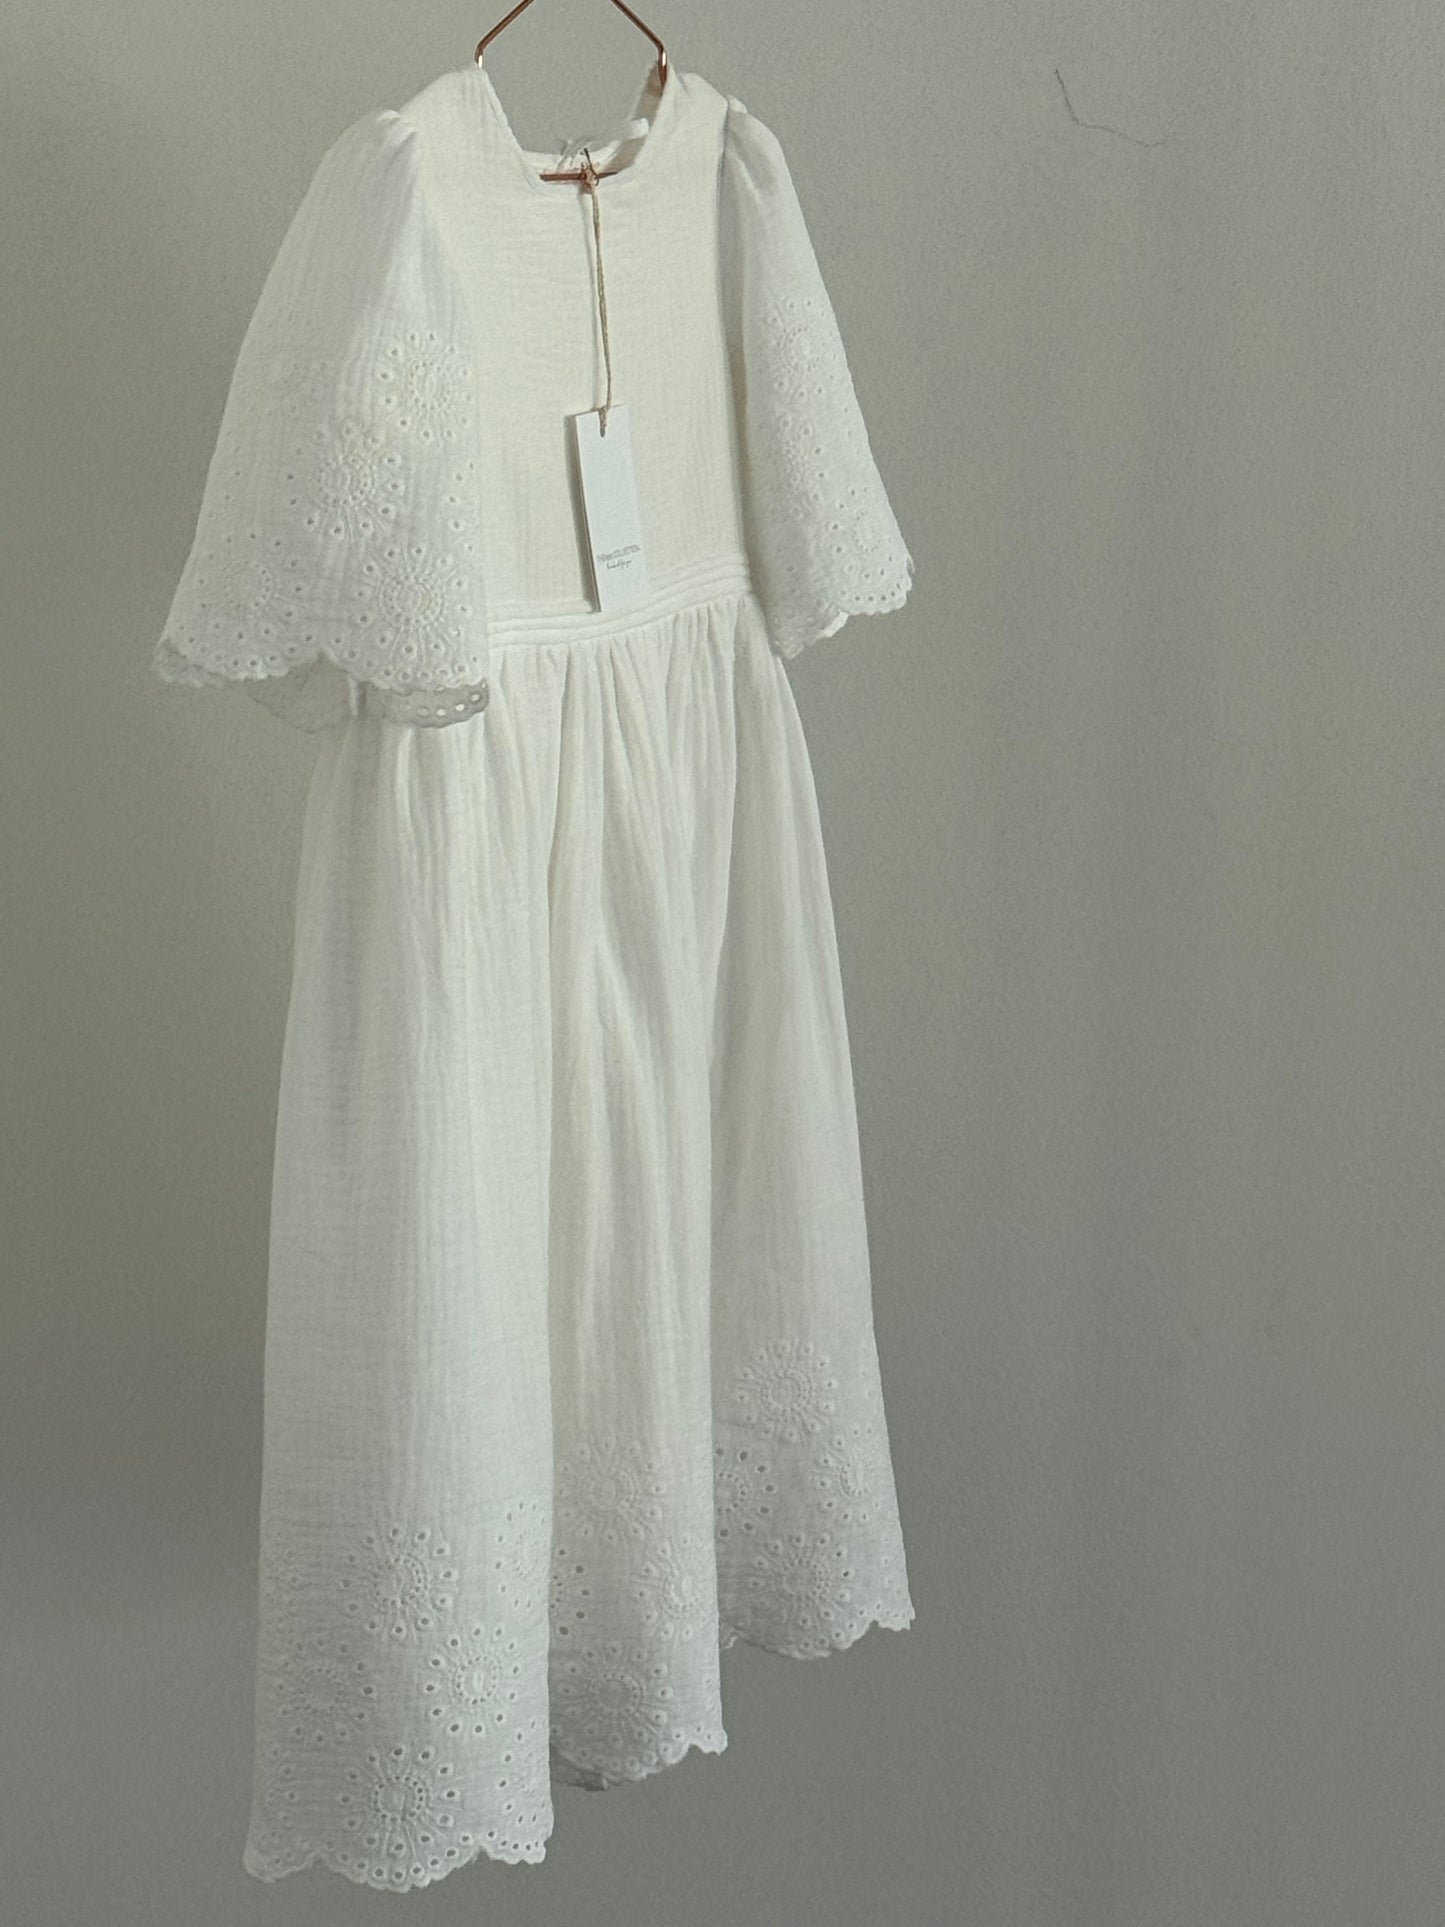 Kleid ILVY in der Stoff-Variante "Margerite"